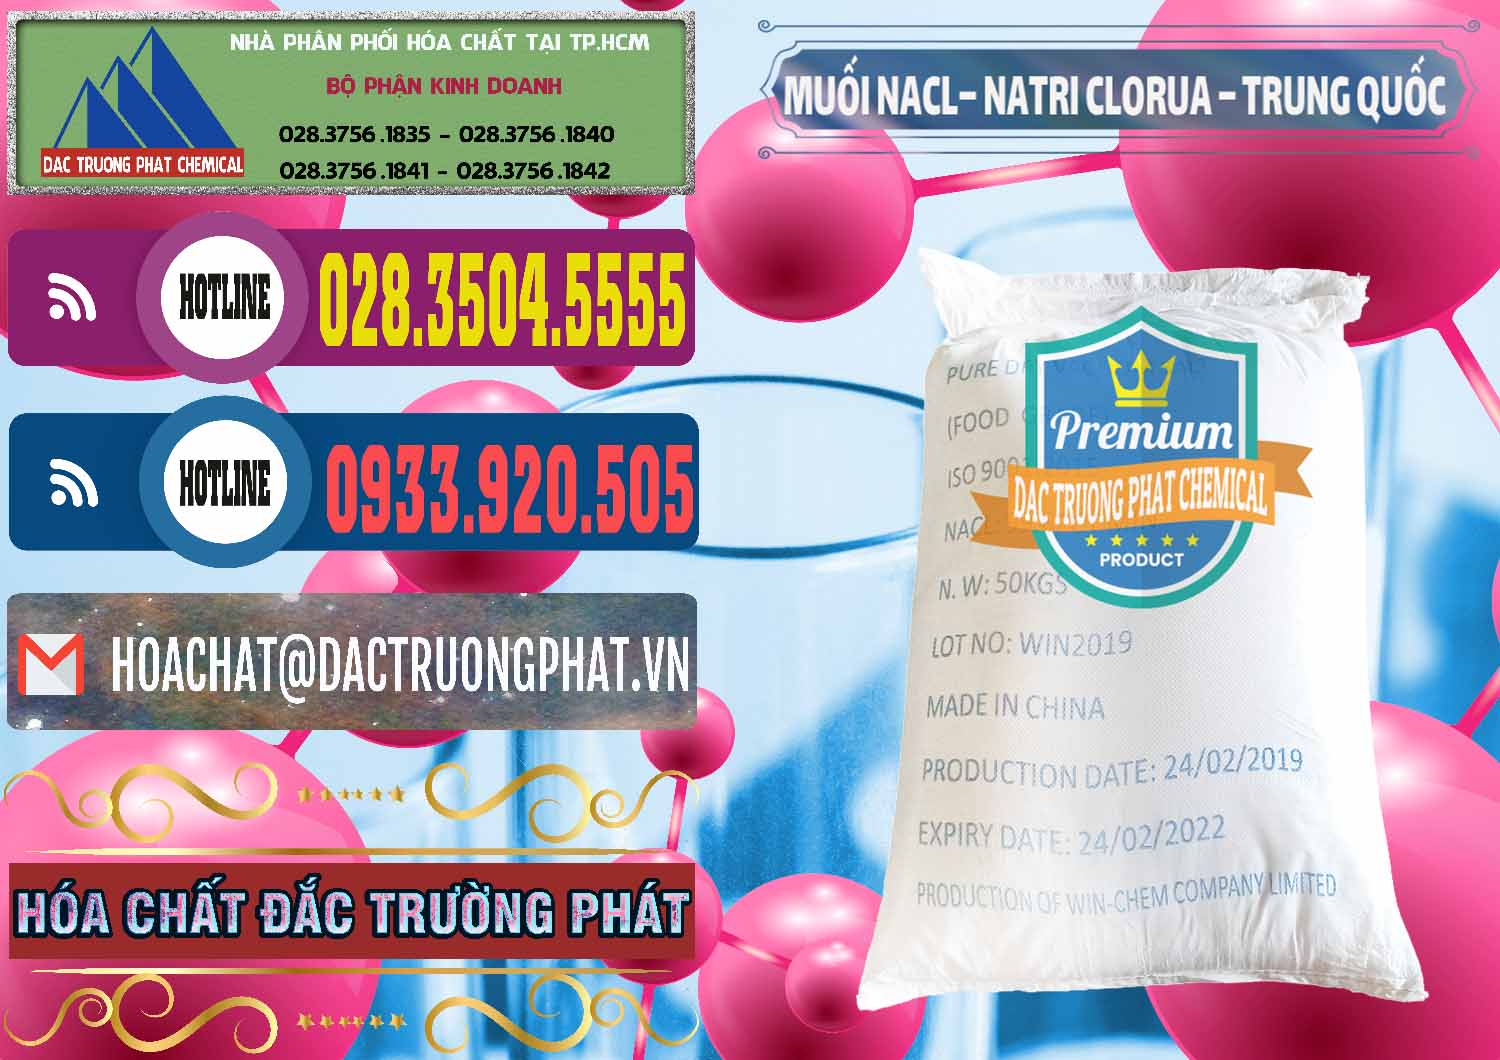 Nhà cung cấp _ bán Muối NaCL – Sodium Chloride Trung Quốc China - 0097 - Công ty chuyên bán _ phân phối hóa chất tại TP.HCM - muabanhoachat.com.vn